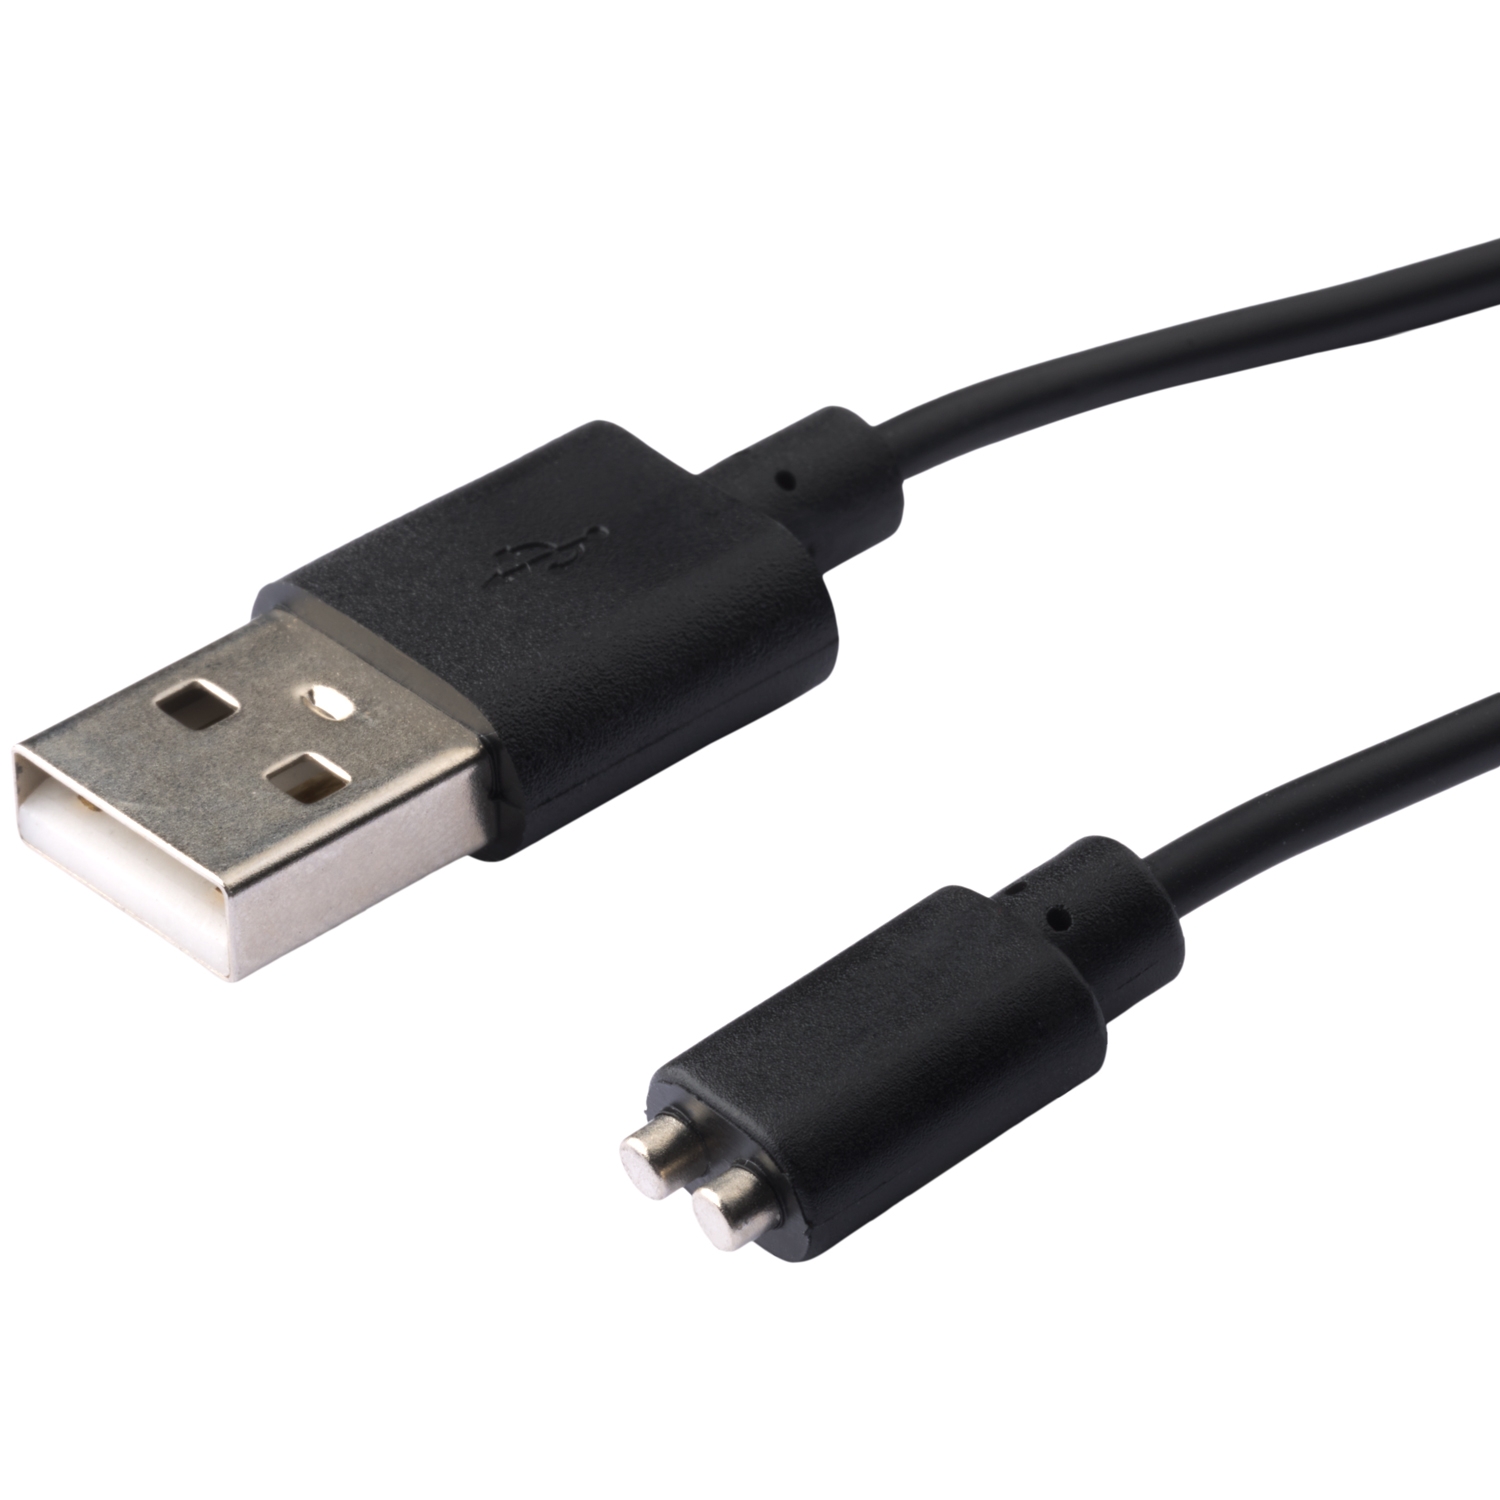 Sinful USB-laddare M5 - Svart